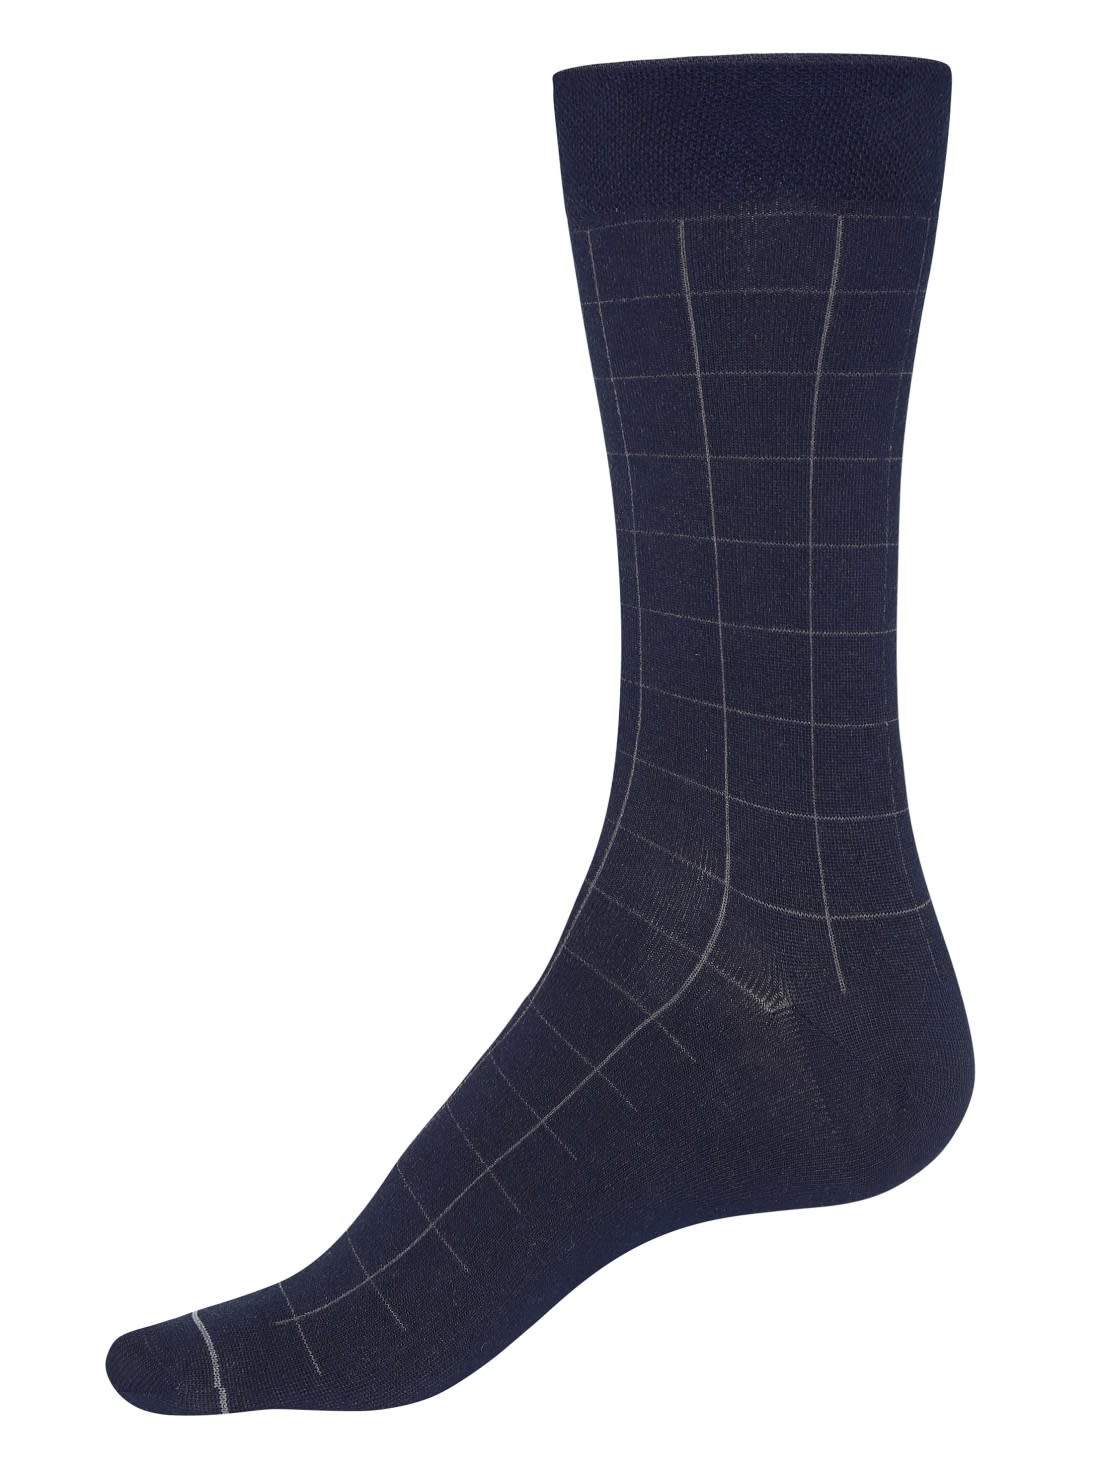 navy socks for men